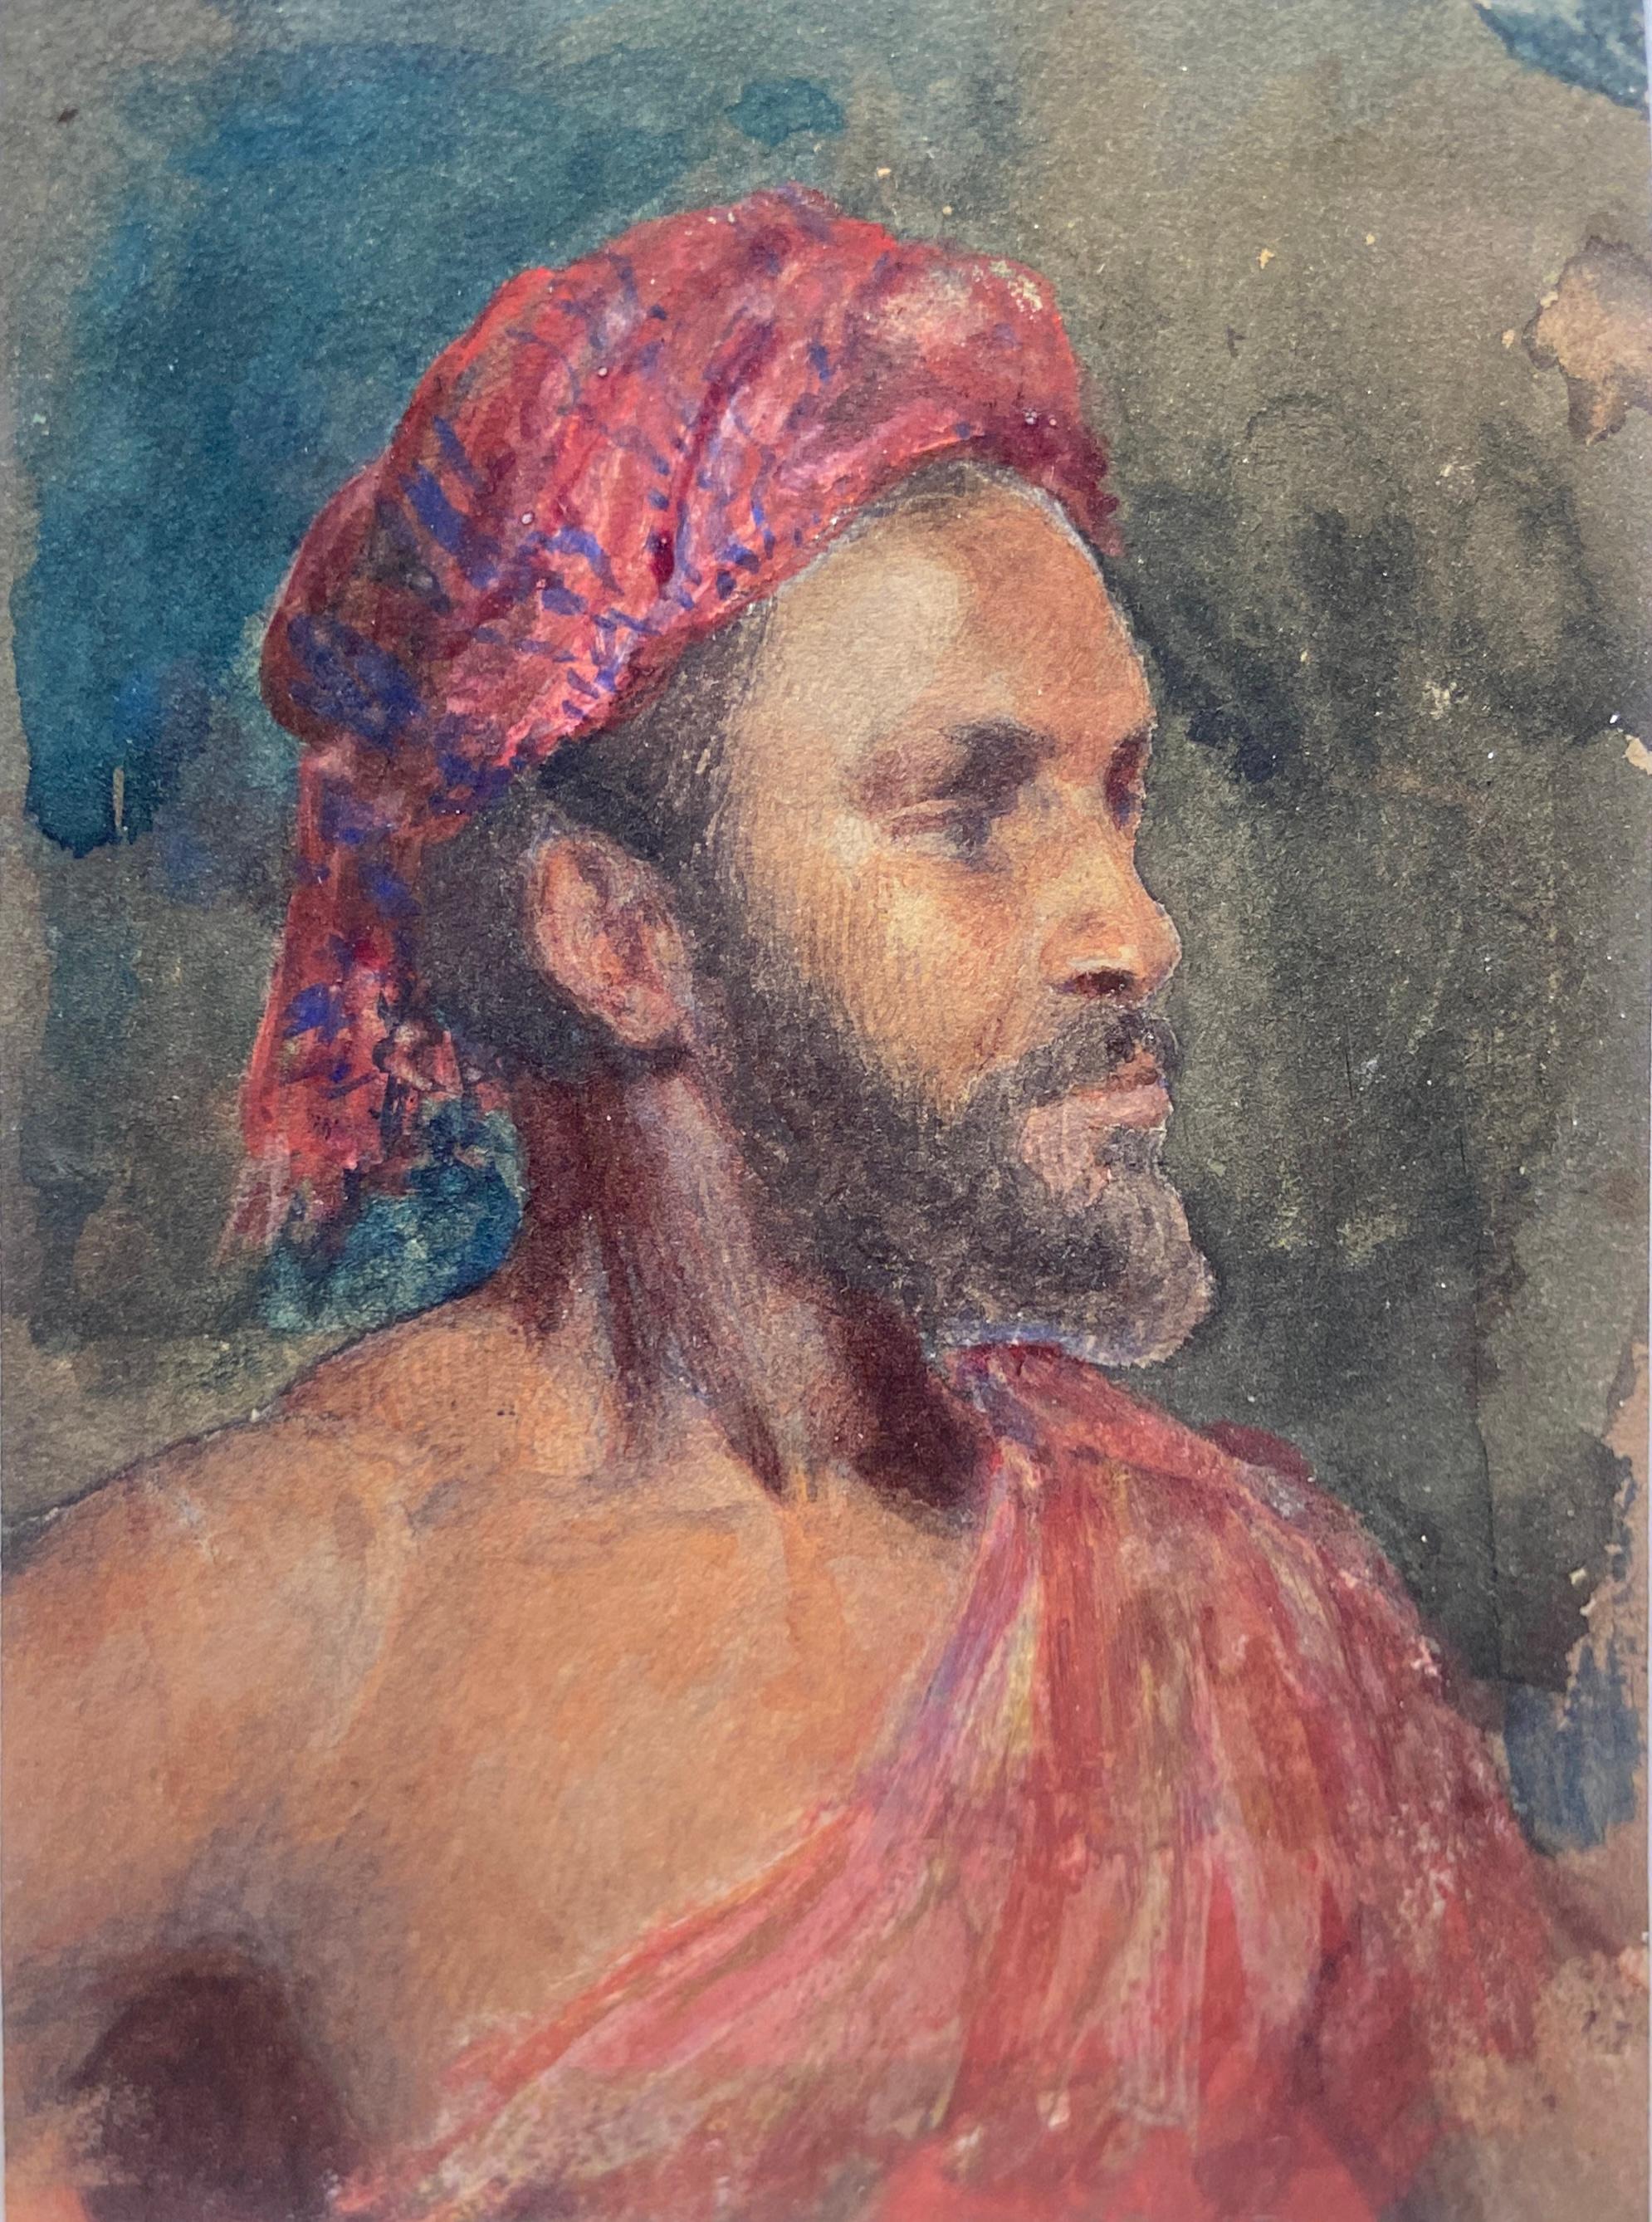 Portrait d'un homme au turban rouge, aquarelle orientaliste du début du XIXe siècle